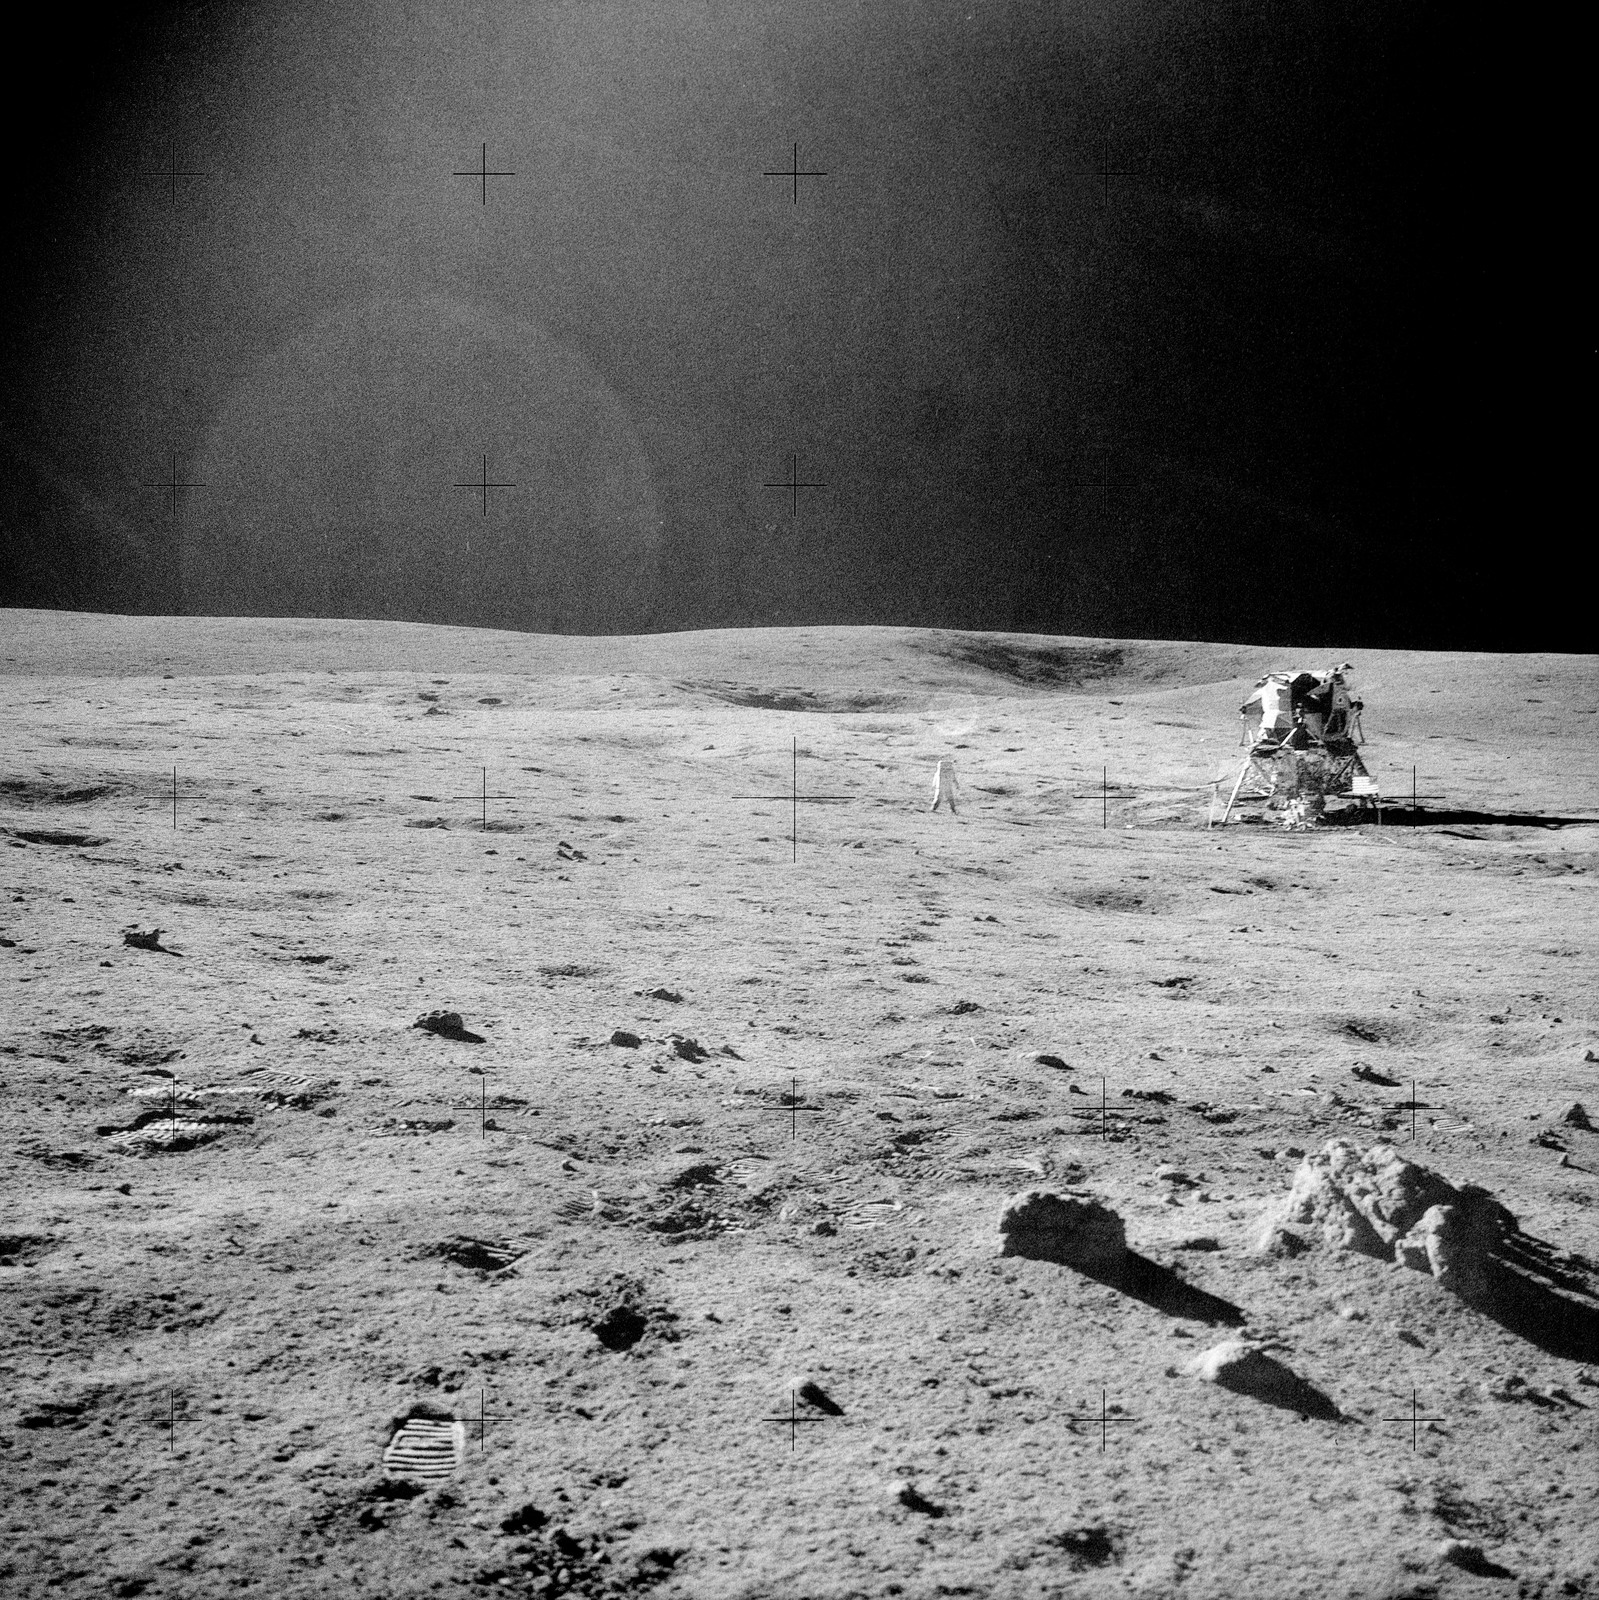 Эдгар Митчелл фото на Луне